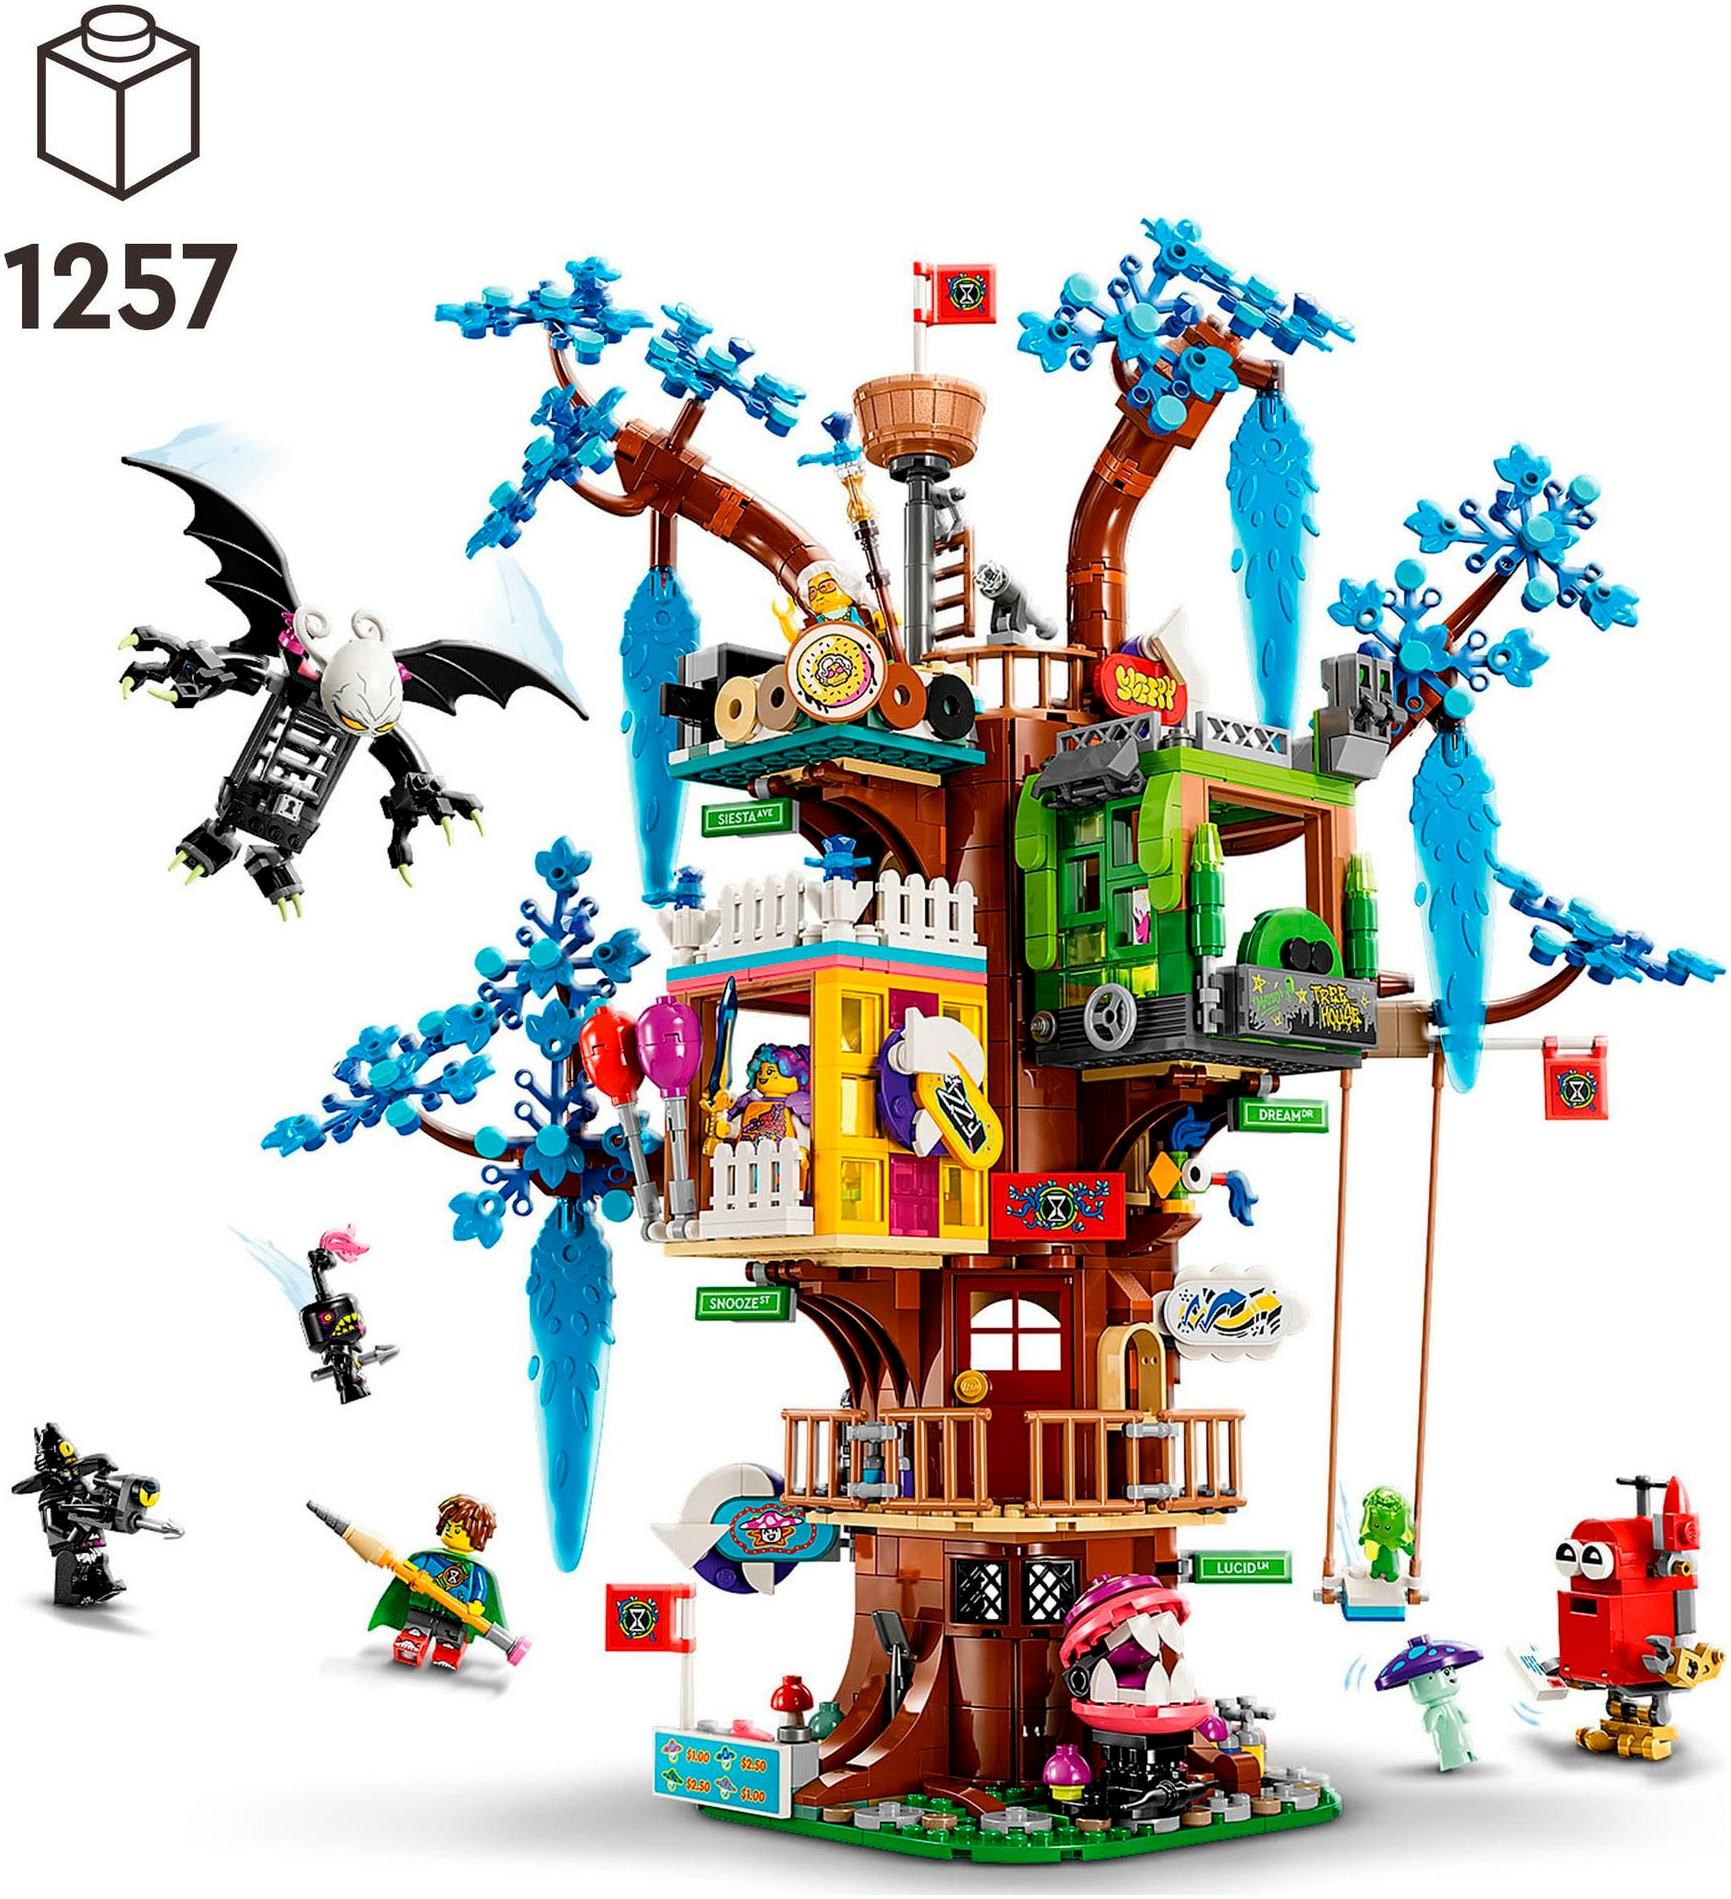 LEGO® Konstruktionsspielsteine »Fantastisches Baumhaus (71461), LEGO® DREAMZzz™«, (1257 St.), Made in Europe